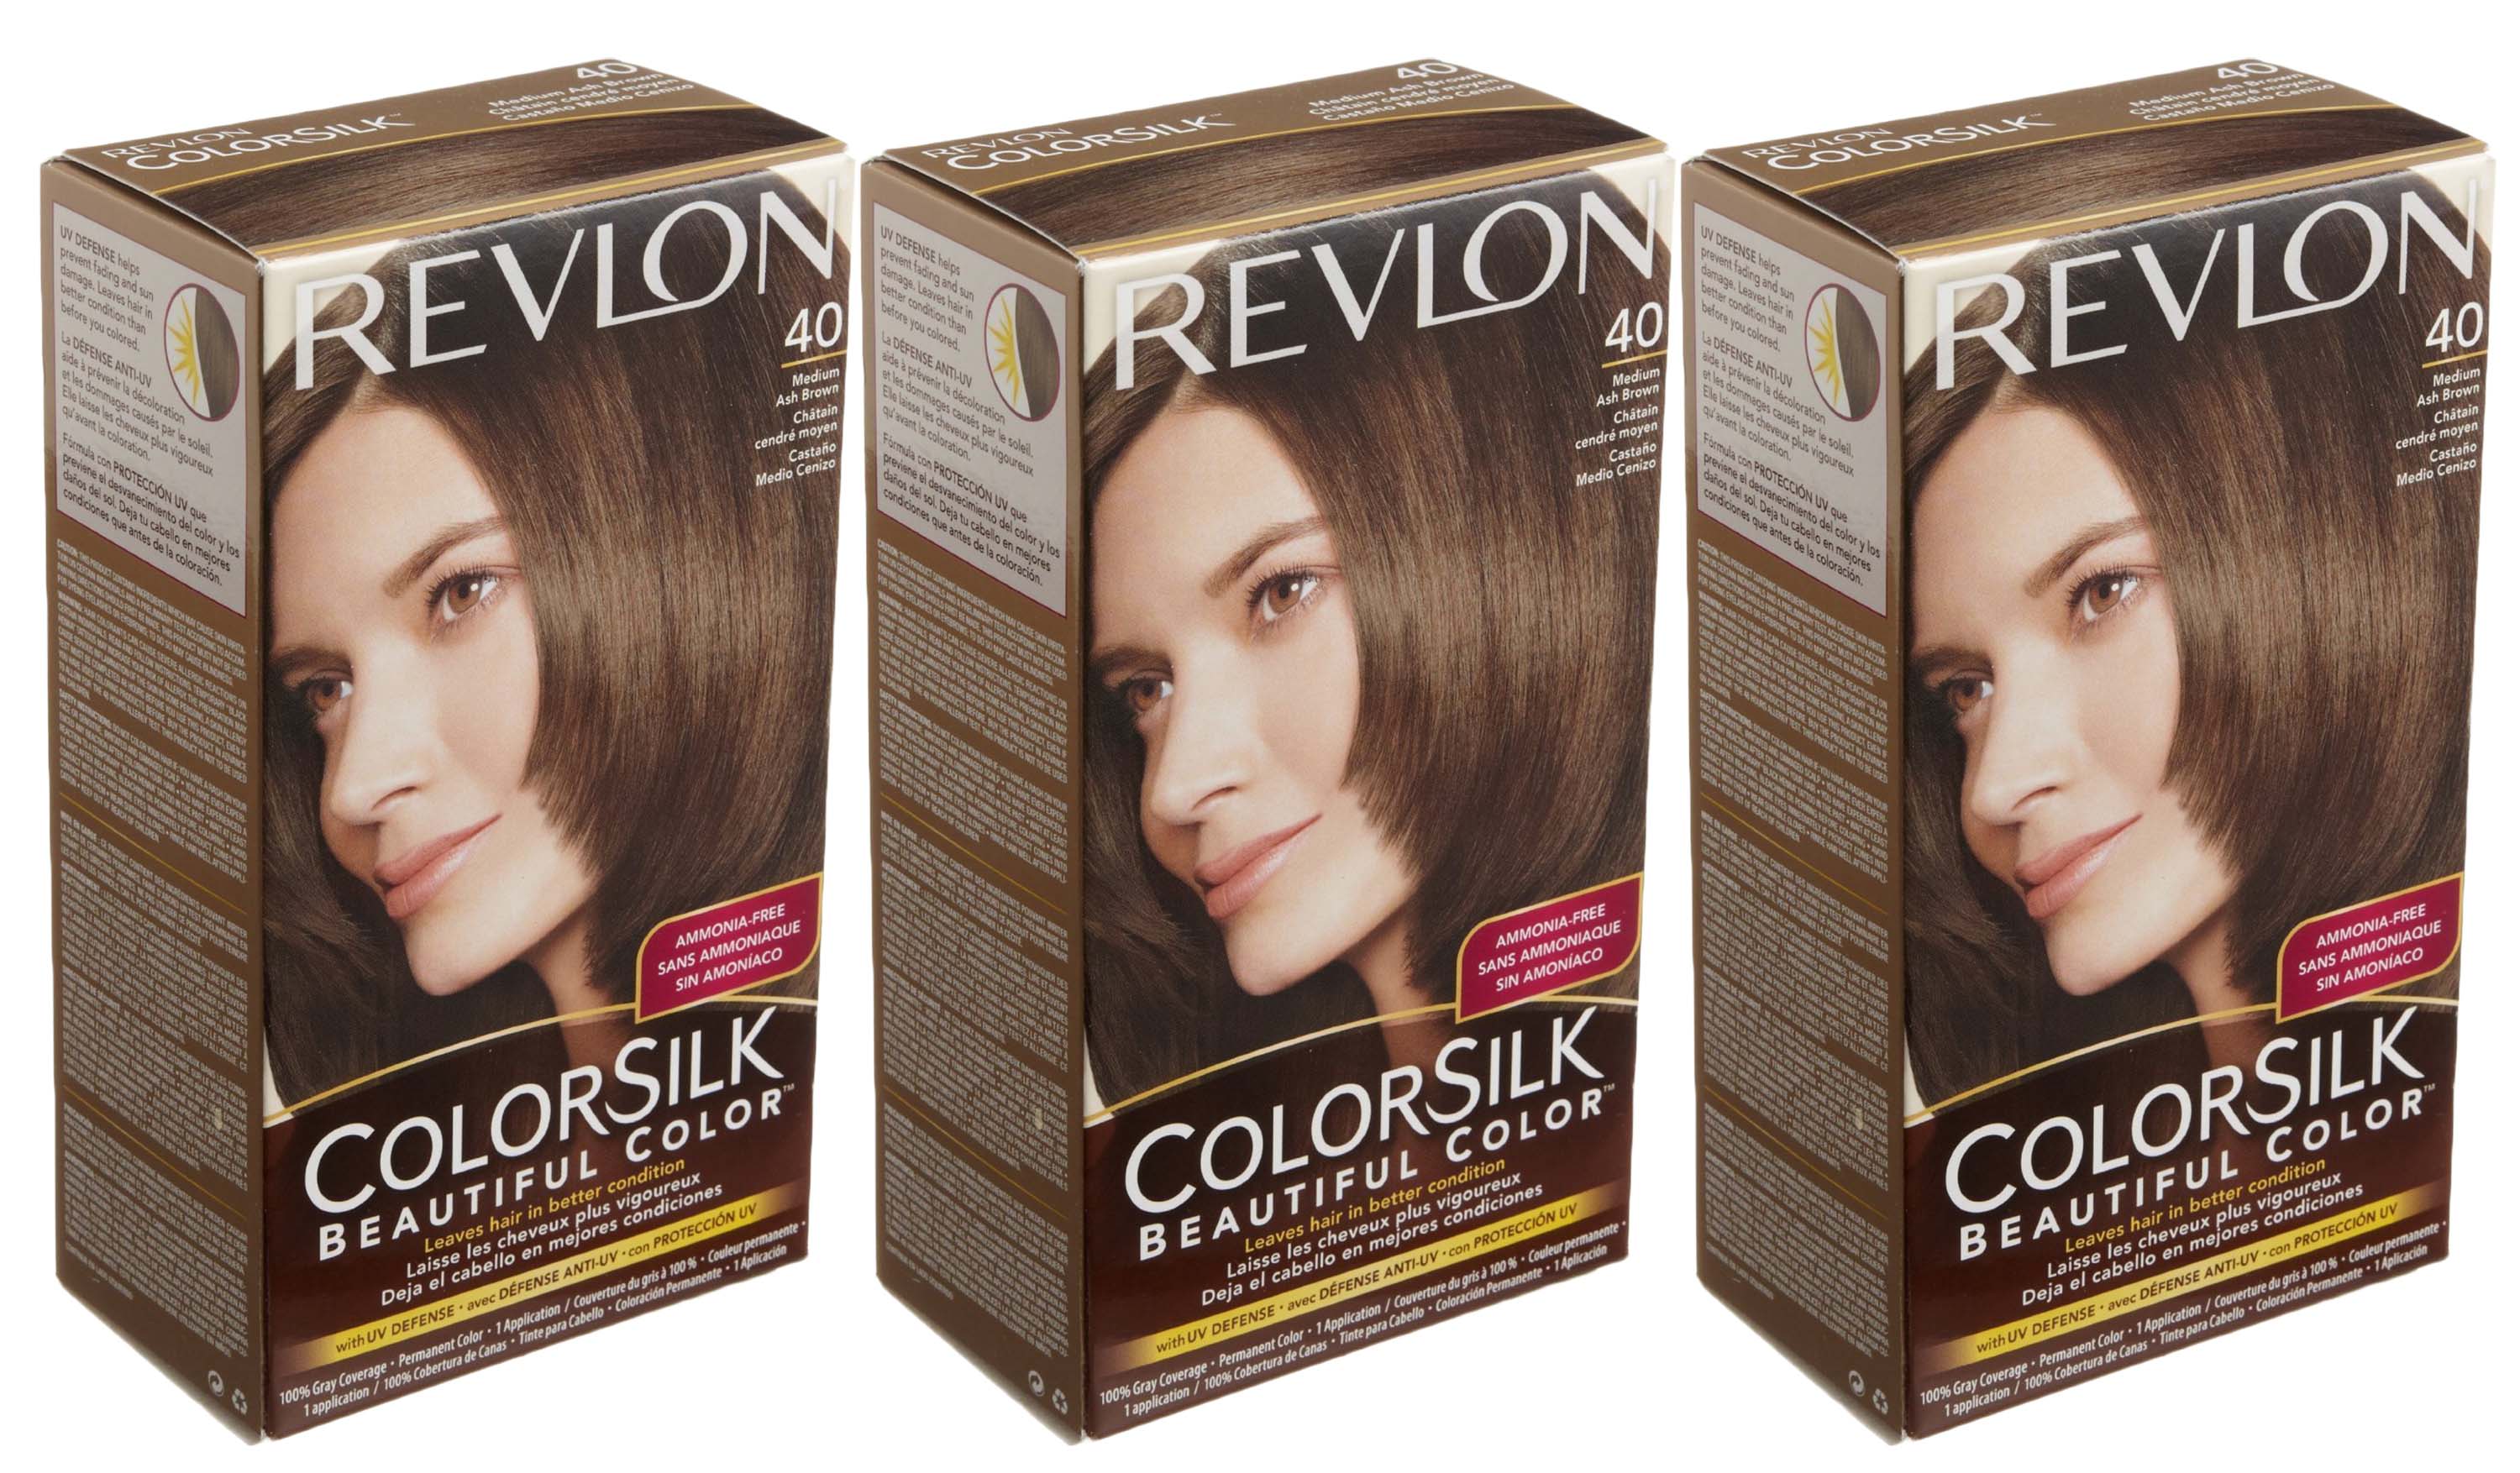 3. Revlon ColorSilk Beautiful Color Hair Color - wide 2